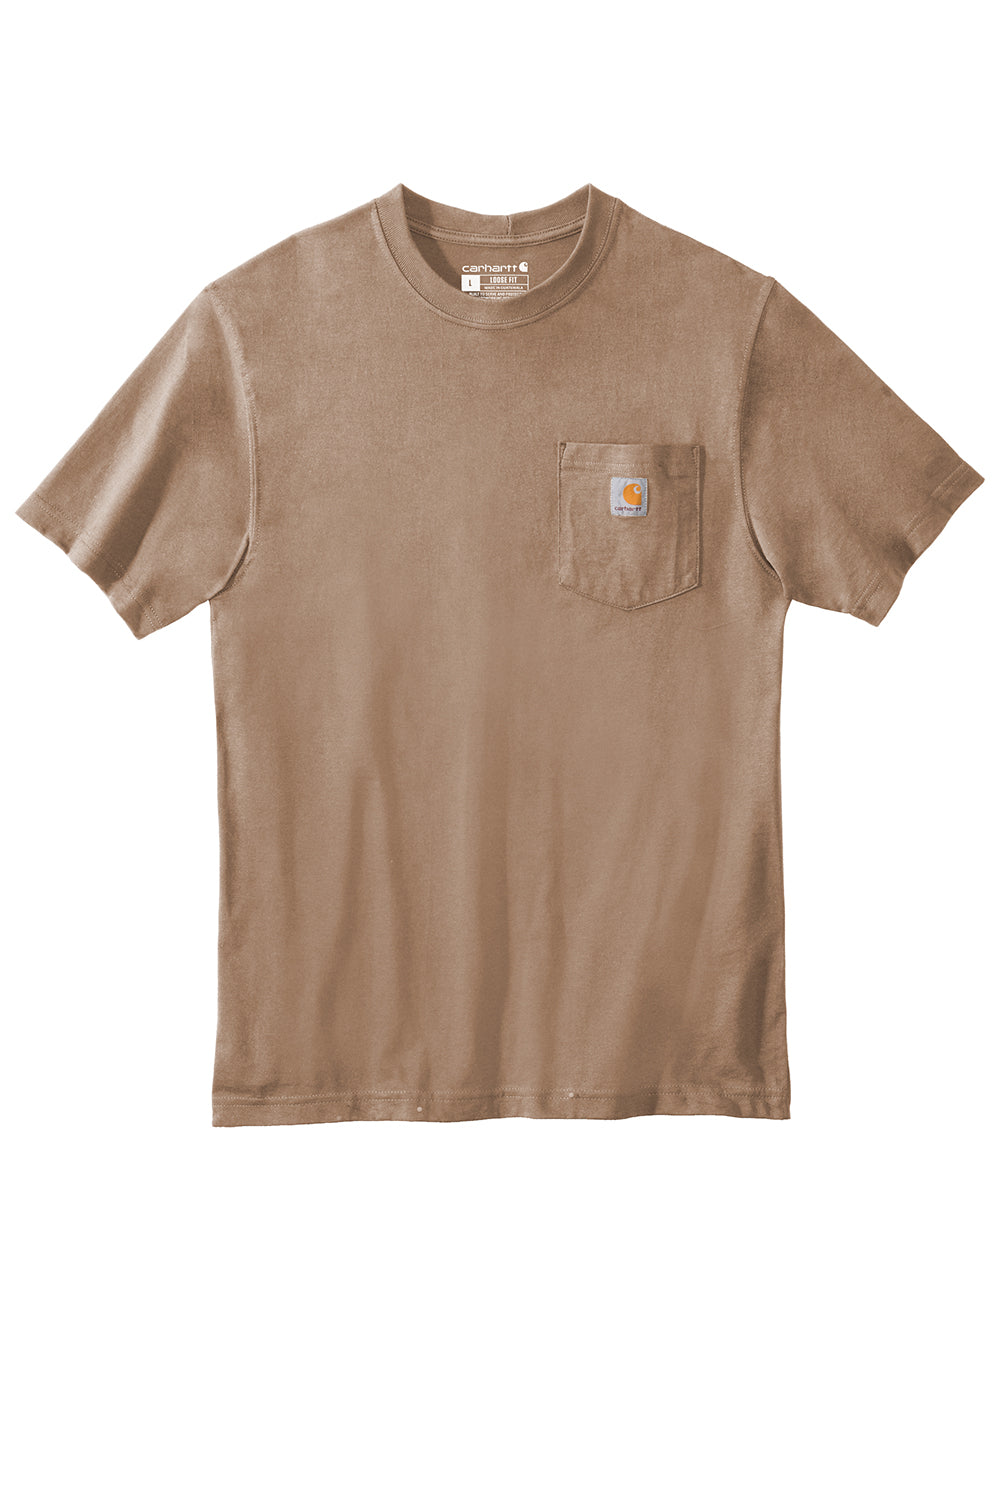 Carhartt CTK87/CTTK87 Mens Workwear Short Sleeve Crewneck T-Shirt w/ Pocket Desert Brown Flat Front